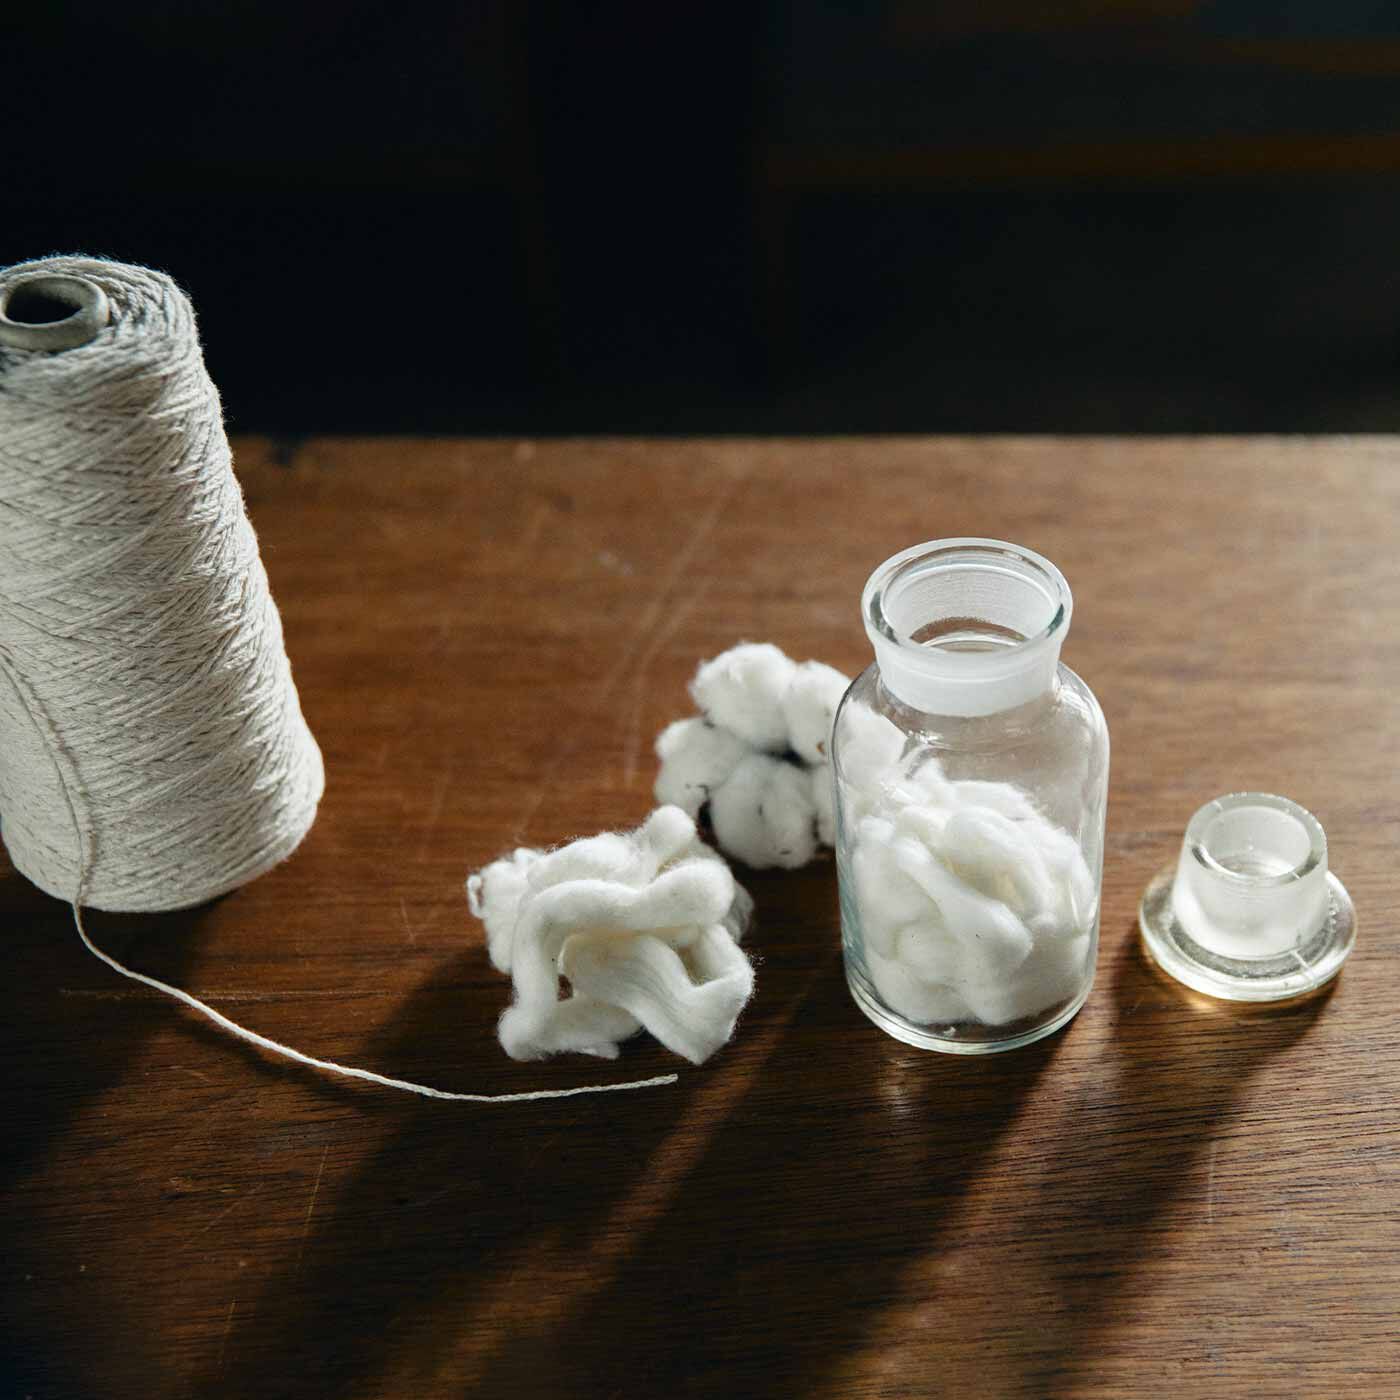 Couturier|リスノス×saredo シャリ感が心地よい わたかみりりりで編むネットバッグの会|超長綿の落ちわたと和紙強撚糸を撚り合わせ、編み物に適したリリヤーン糸に仕上げました。